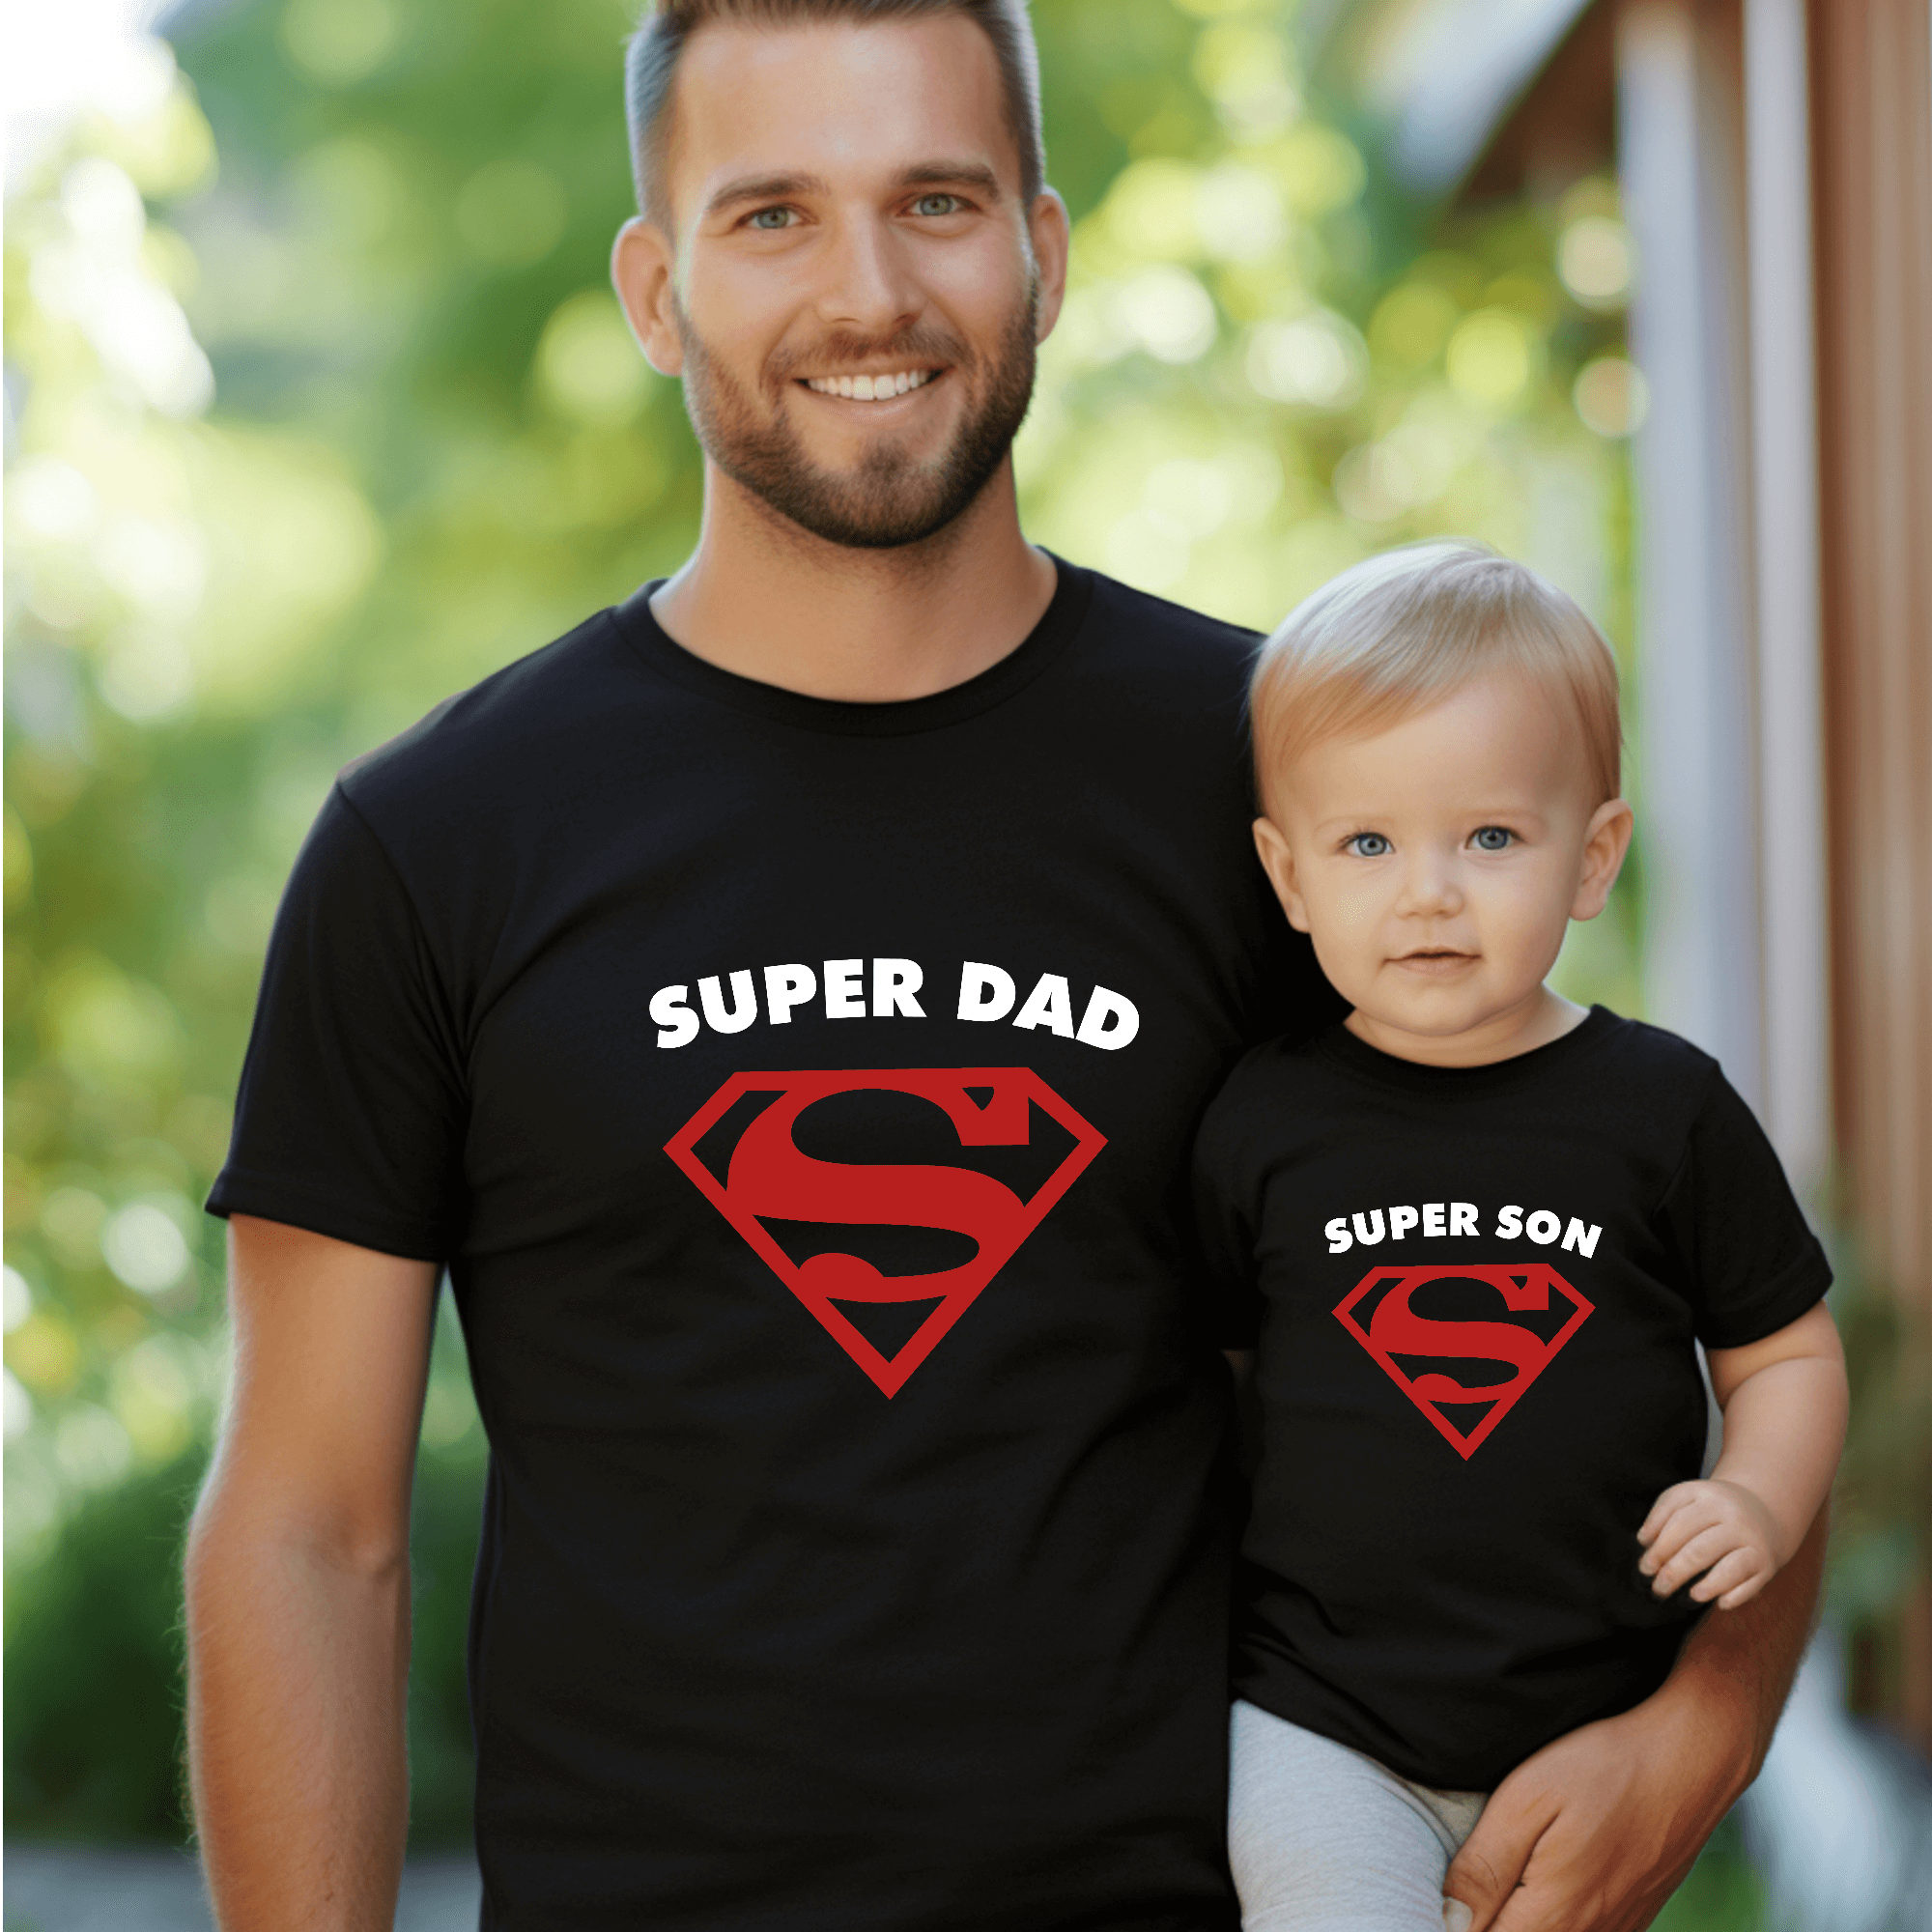 Superità T -Shirt, mamma e bambini